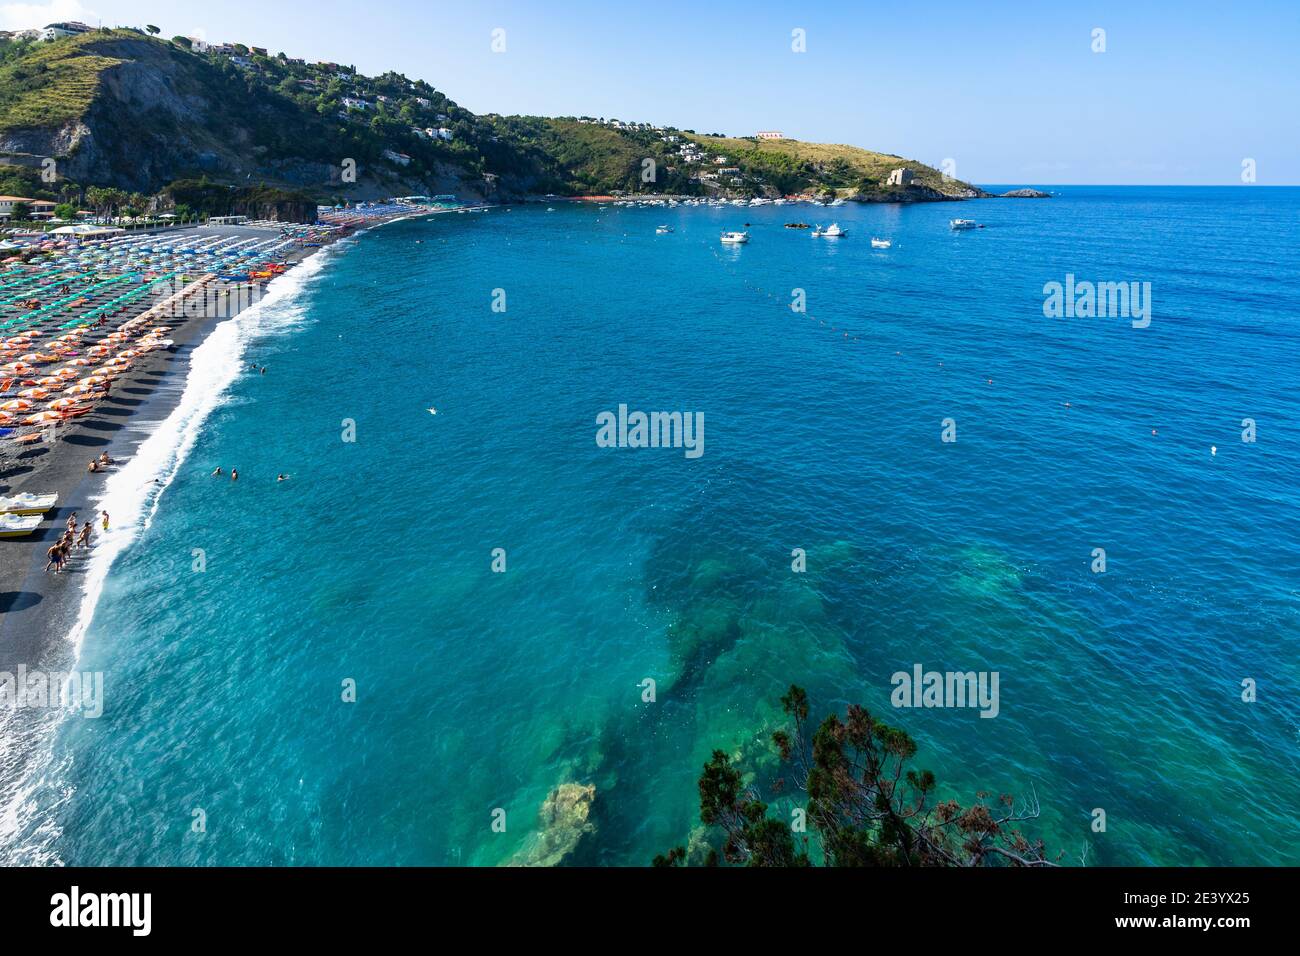 Clear blue sea water at Marinella beach at San Nicola Arcella, Calabria, Italy Stock Photo